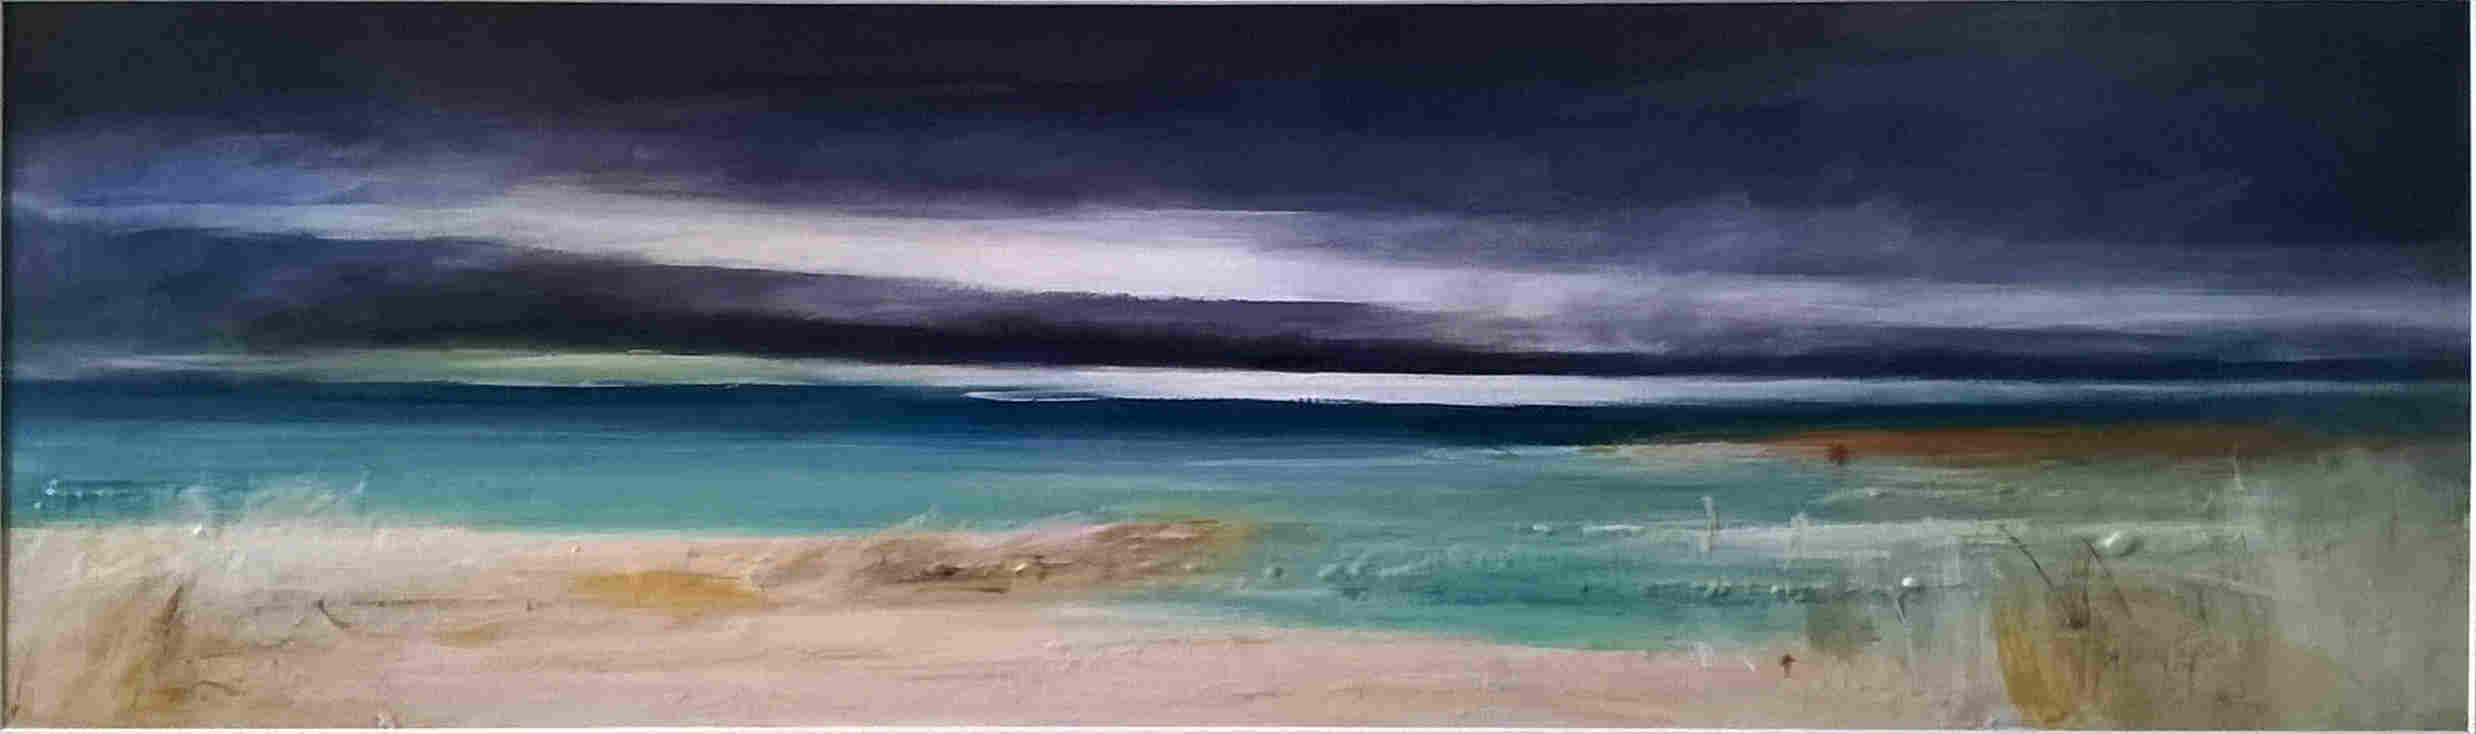 'Harris, Western Isles' by artist Pamela Dawson Taylor